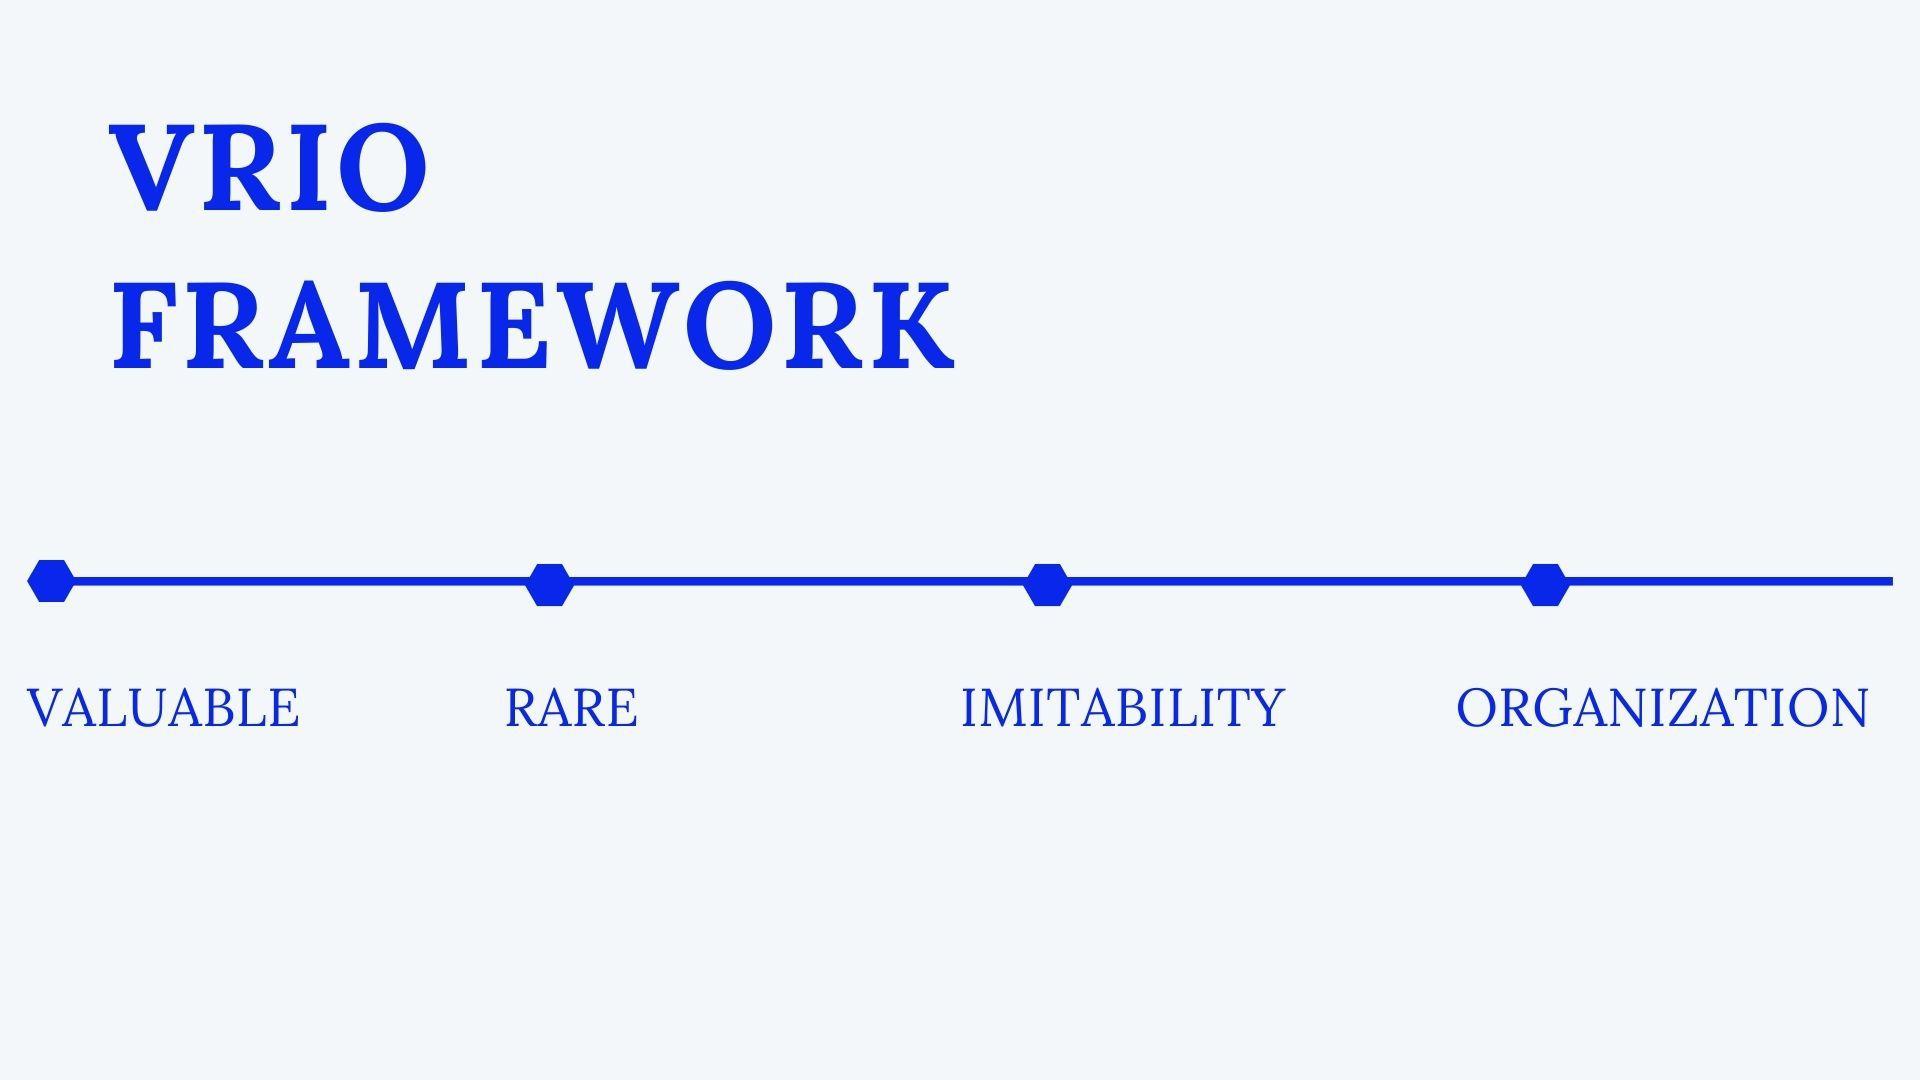 VRIO framework